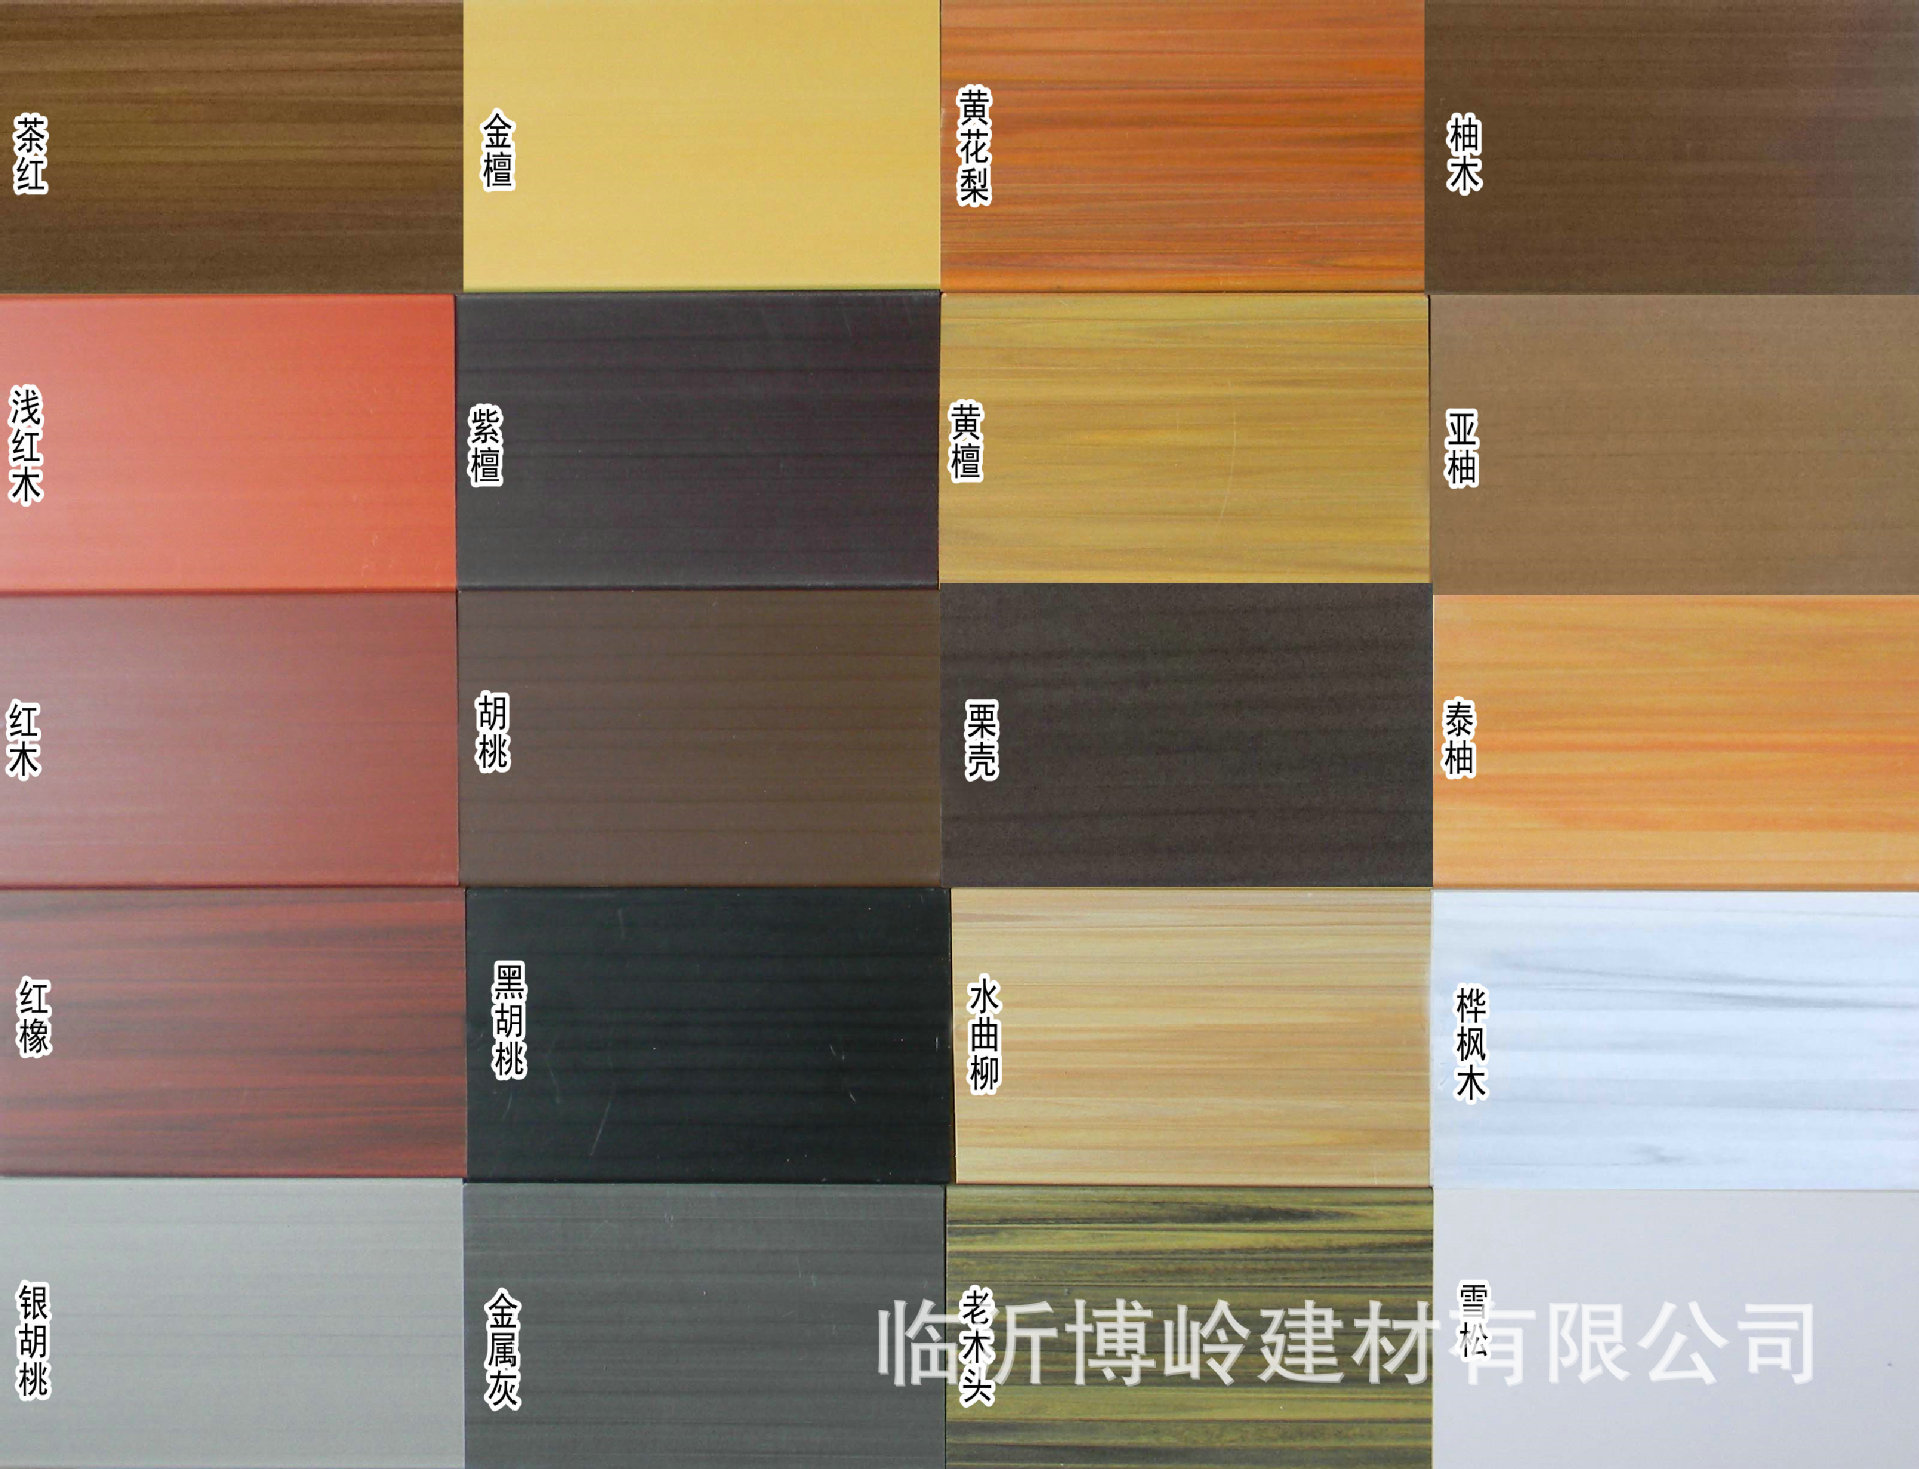 厂家直销 生态木外墙板 150平面外墙板/浮雕 防水阻燃PVC木塑墙板示例图7